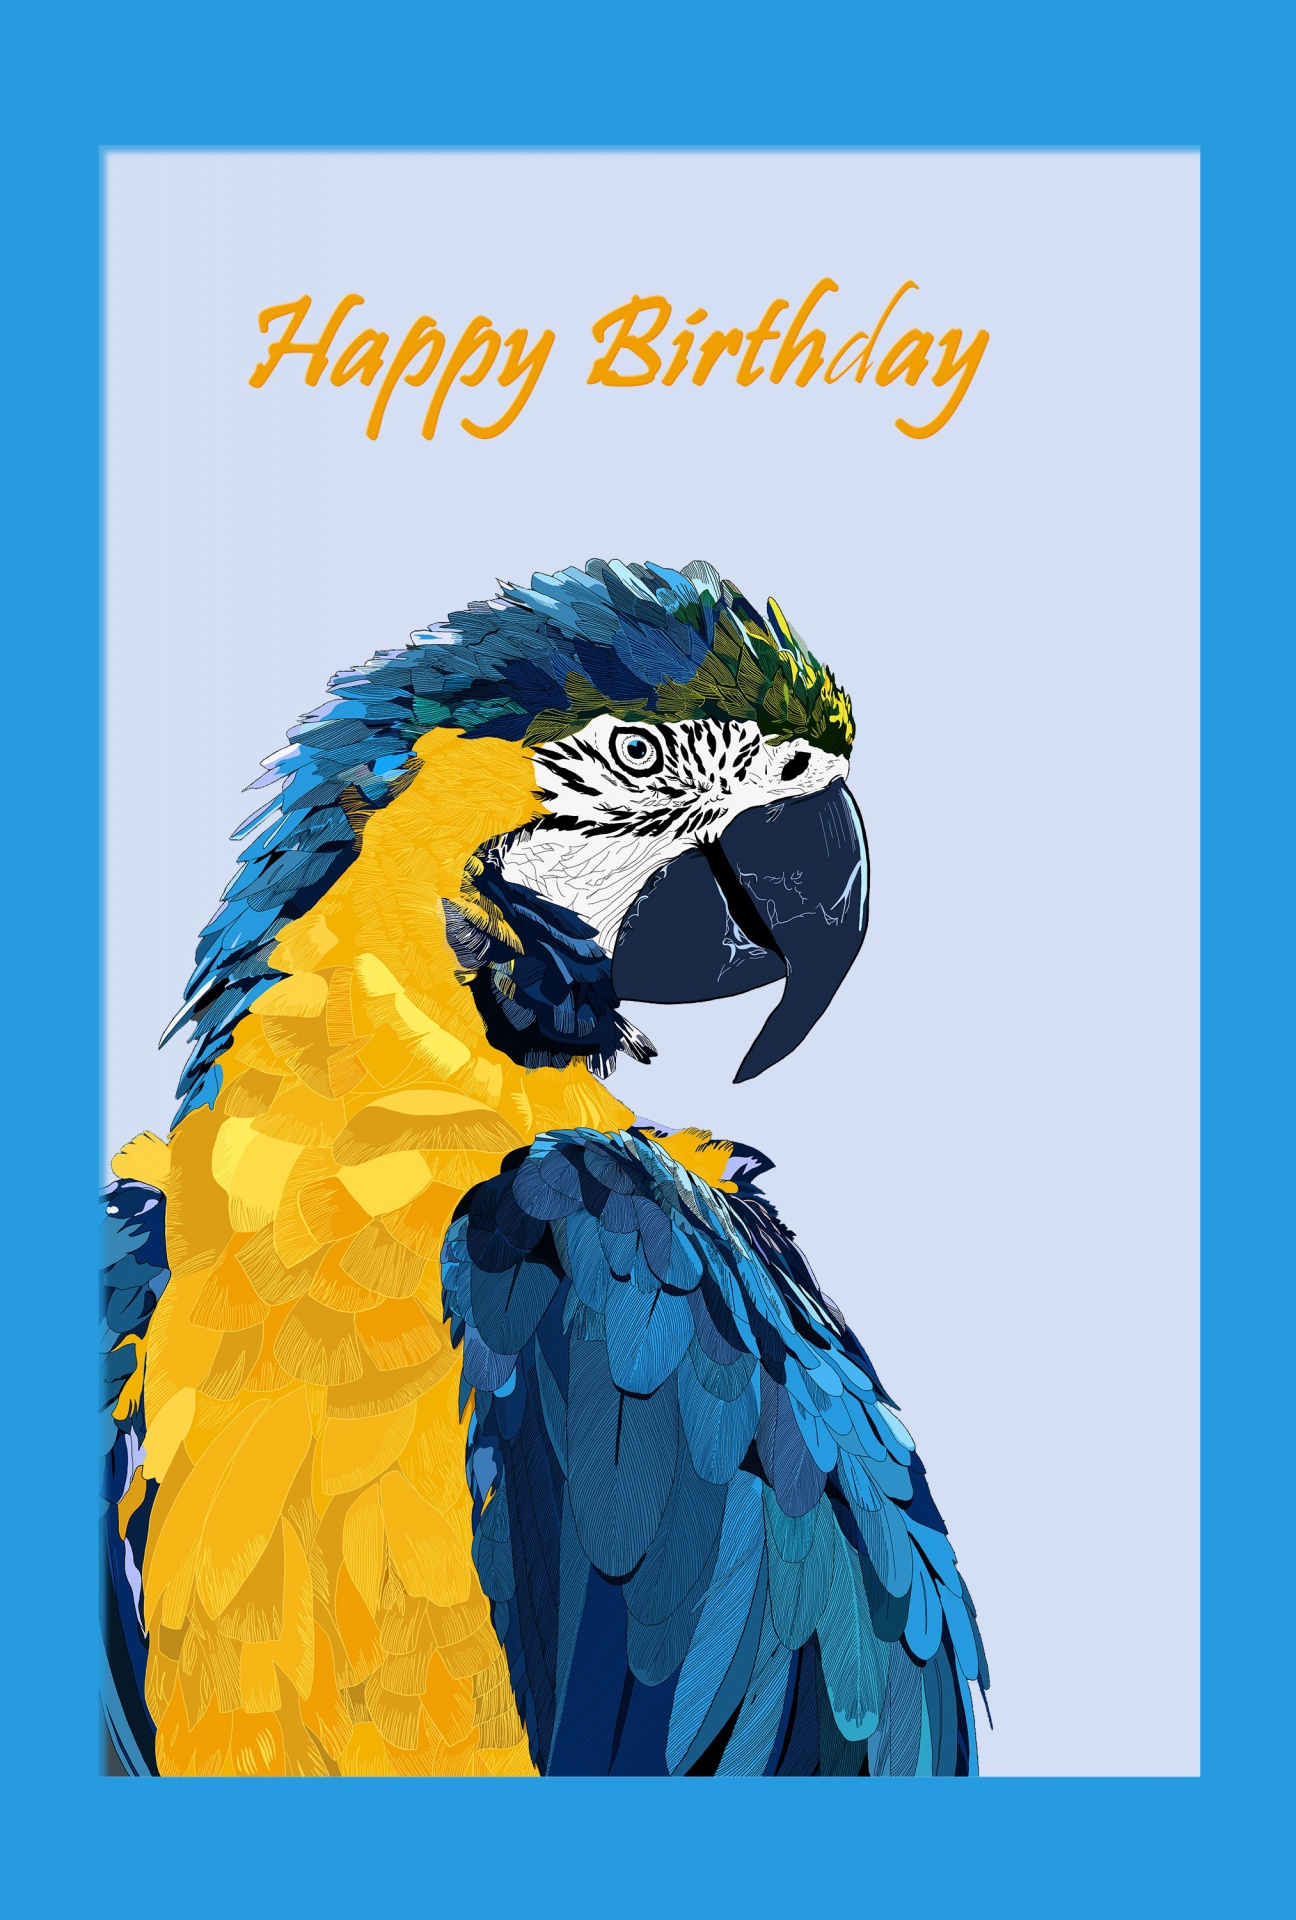 parrot bird illustration free photo